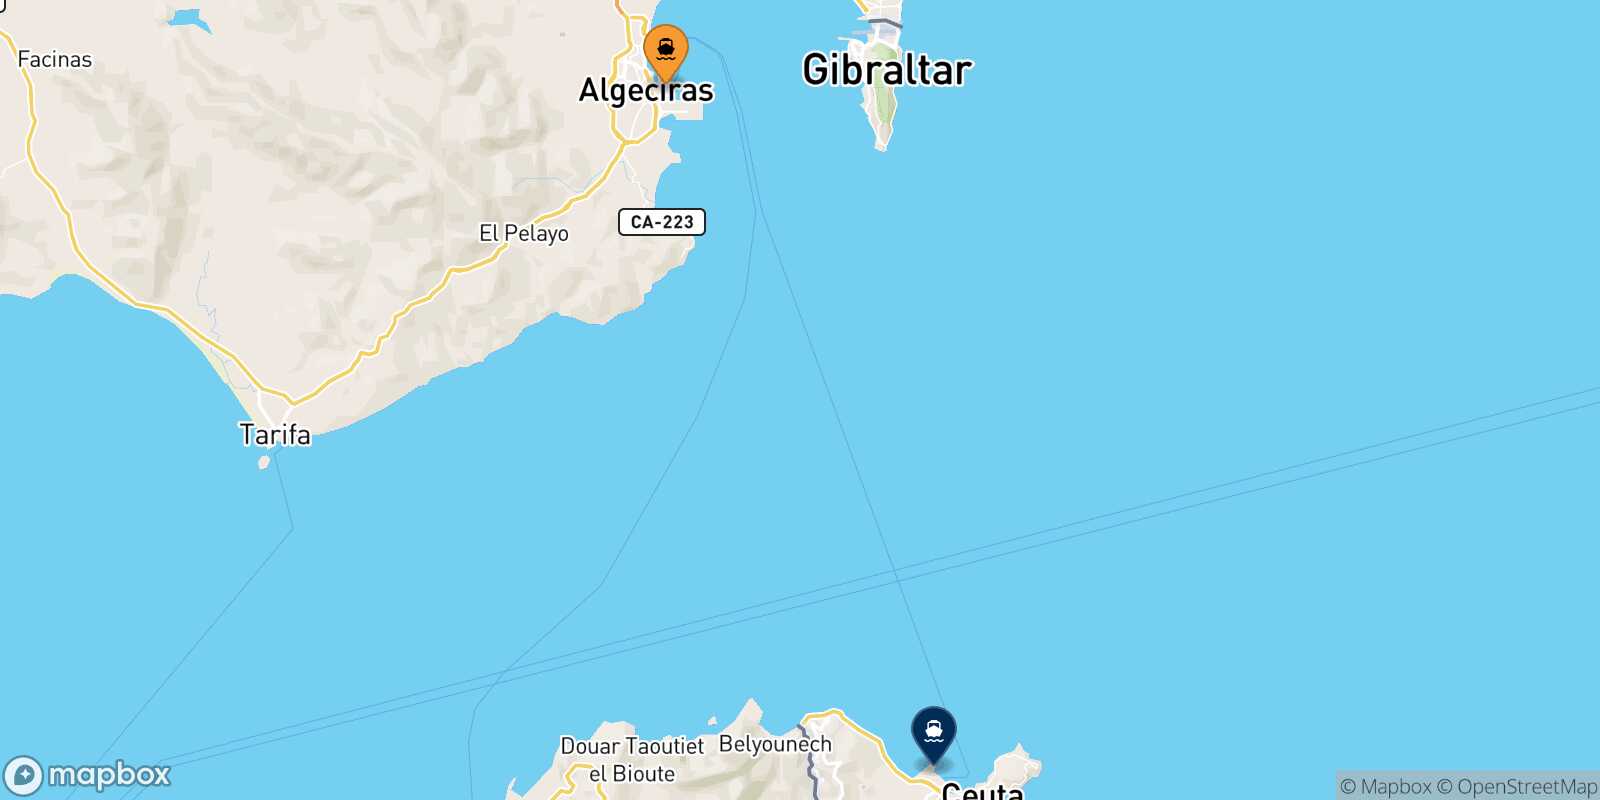 Mappa della rotta Algeciras Ceuta